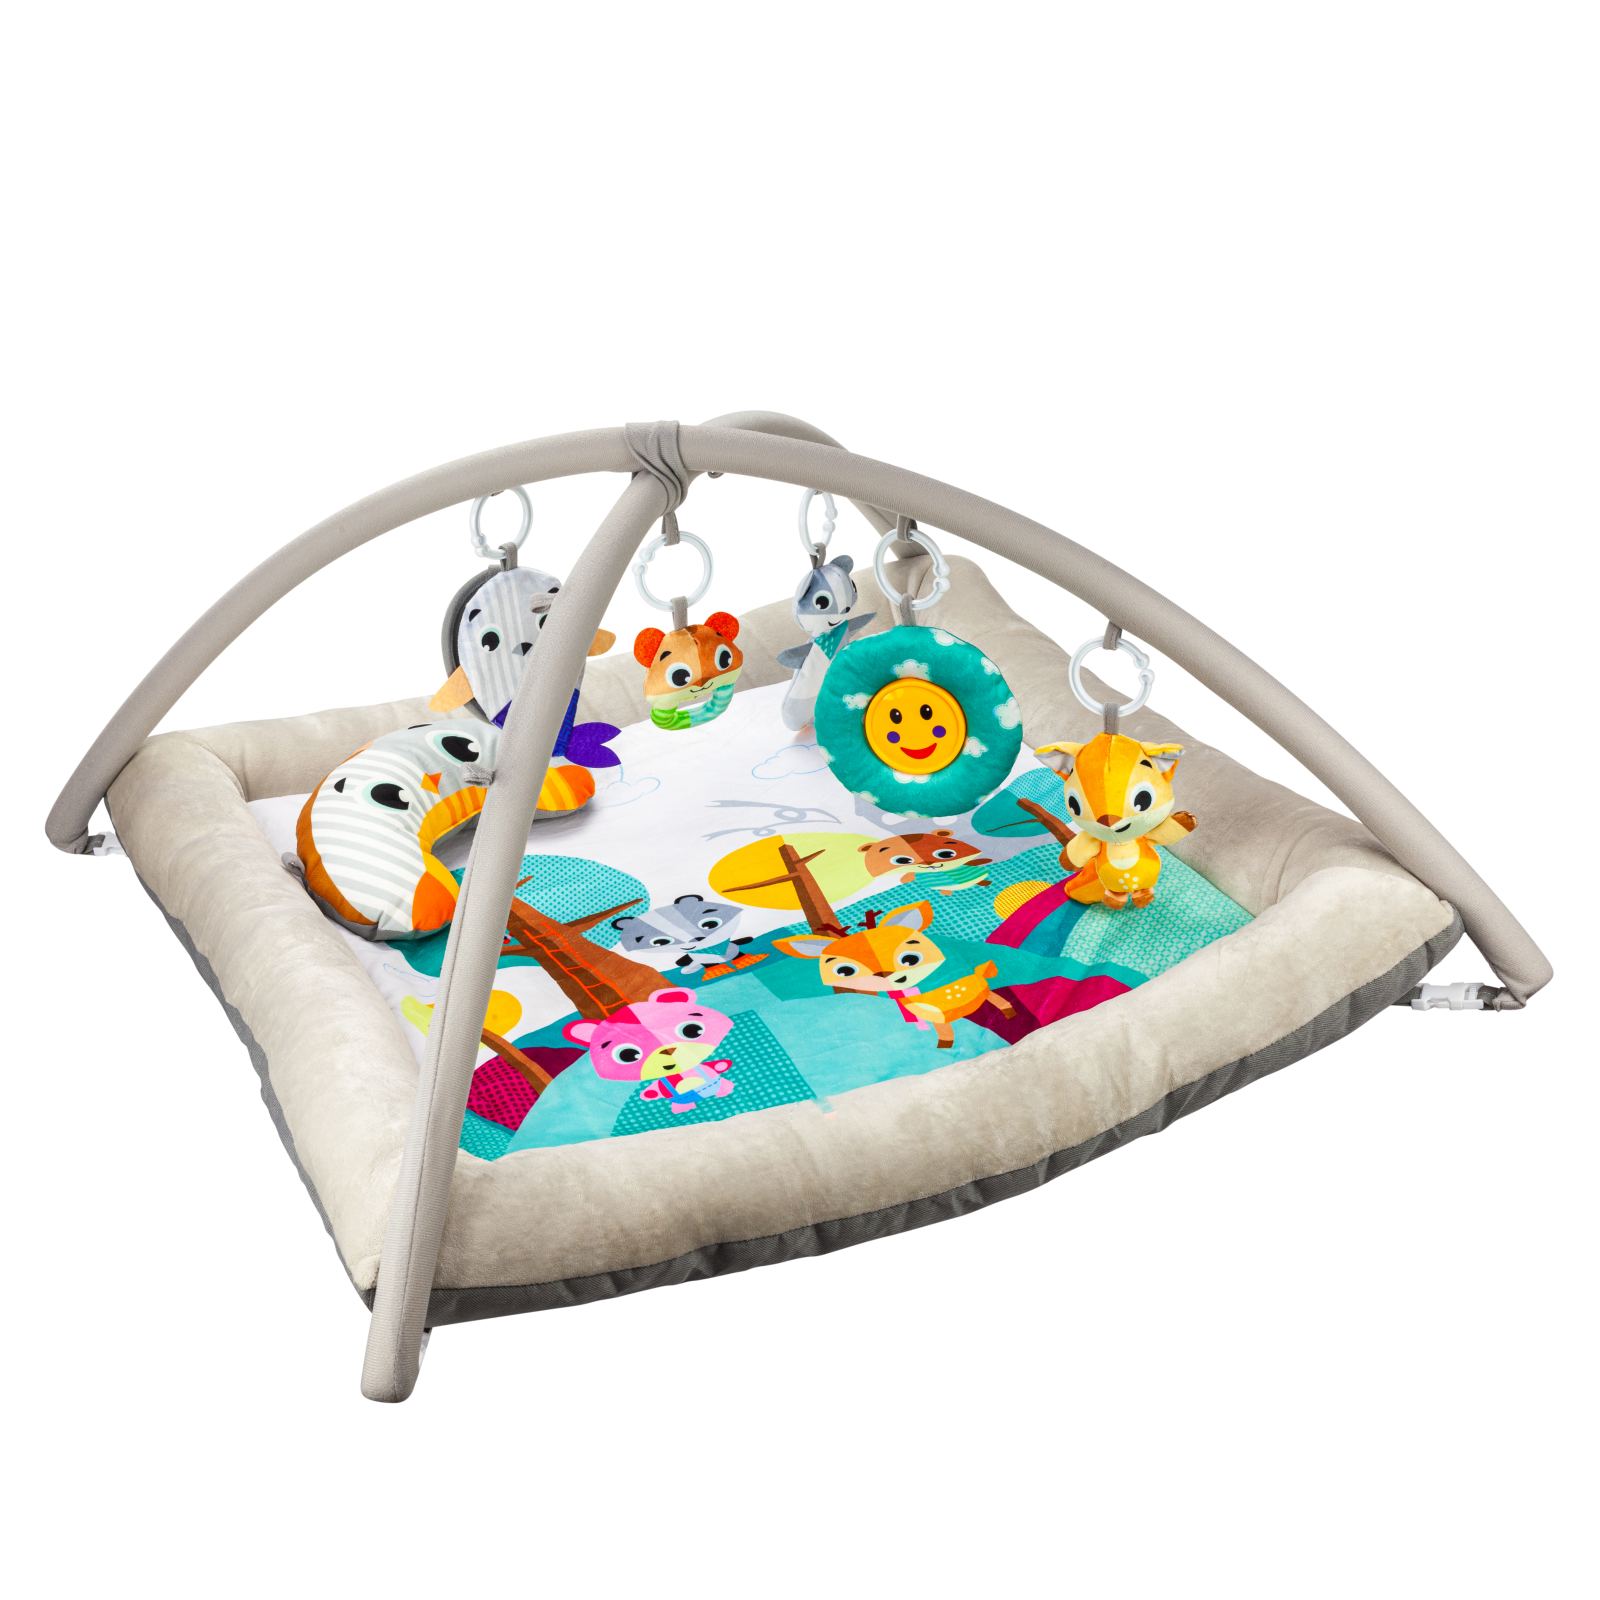 фото Развивающий игровой коврик solmax для новорожденных с дугой и игрушками, бежевый/голубой